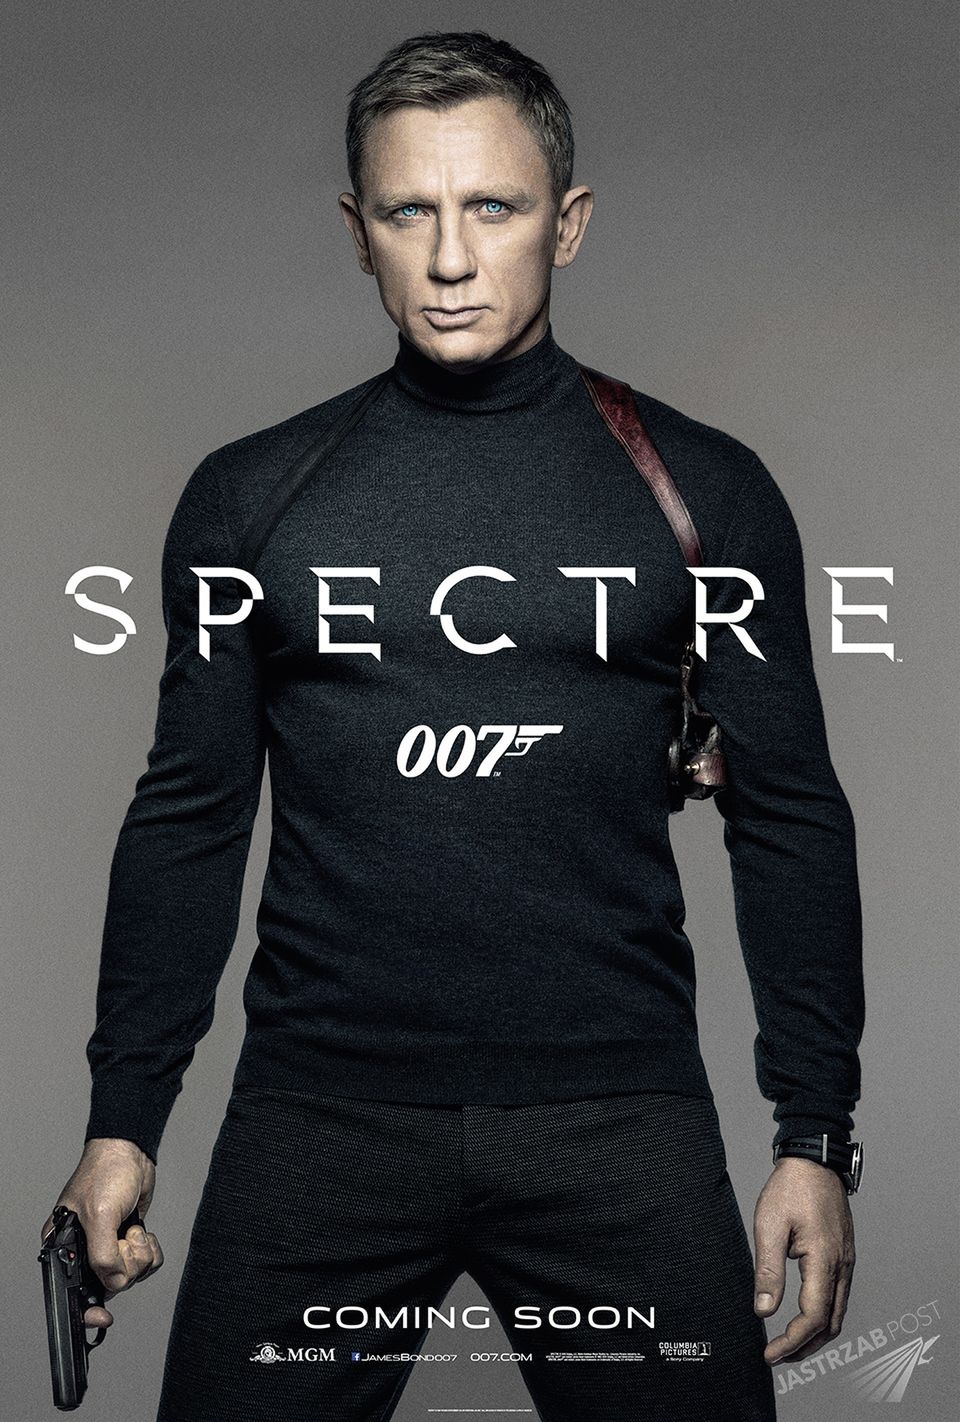 James Bond Spectre - data premiery w Polsce, trailer, zapowiedź